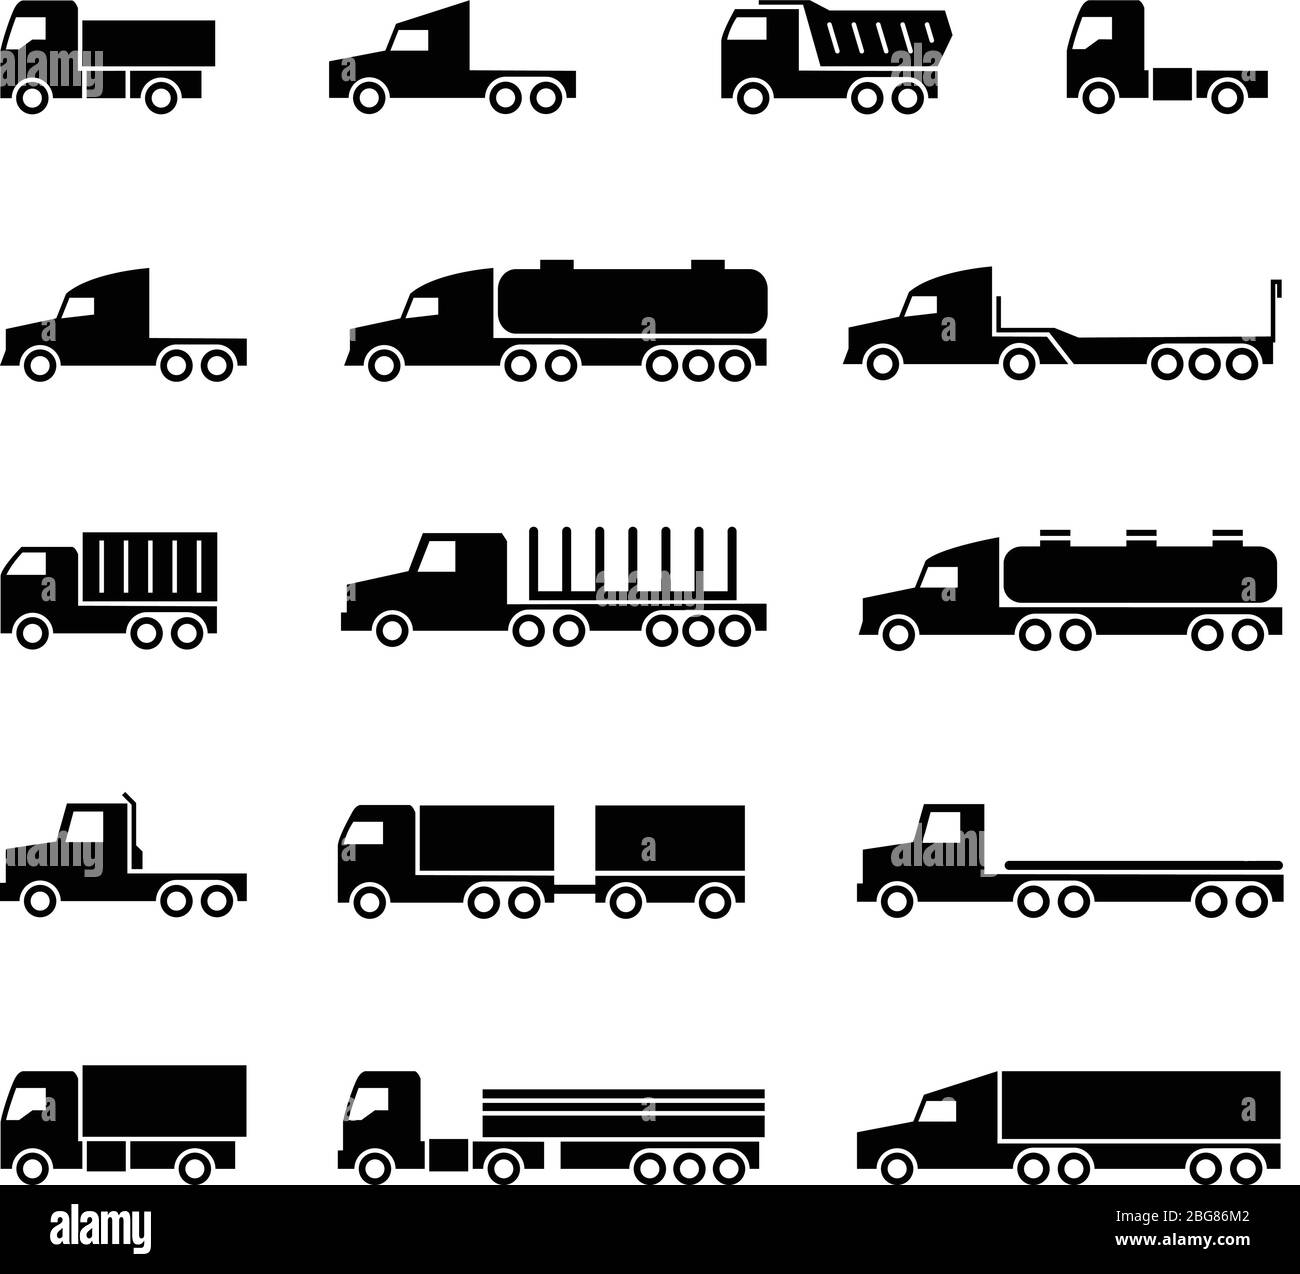 Icone della sagoma del veicolo. Spedizioni, truccini, dumper e furgoni. Simboli dei vettori di trasporto. Illustrazione di rimorchi per trasporto, furgoni, veicoli Illustrazione Vettoriale